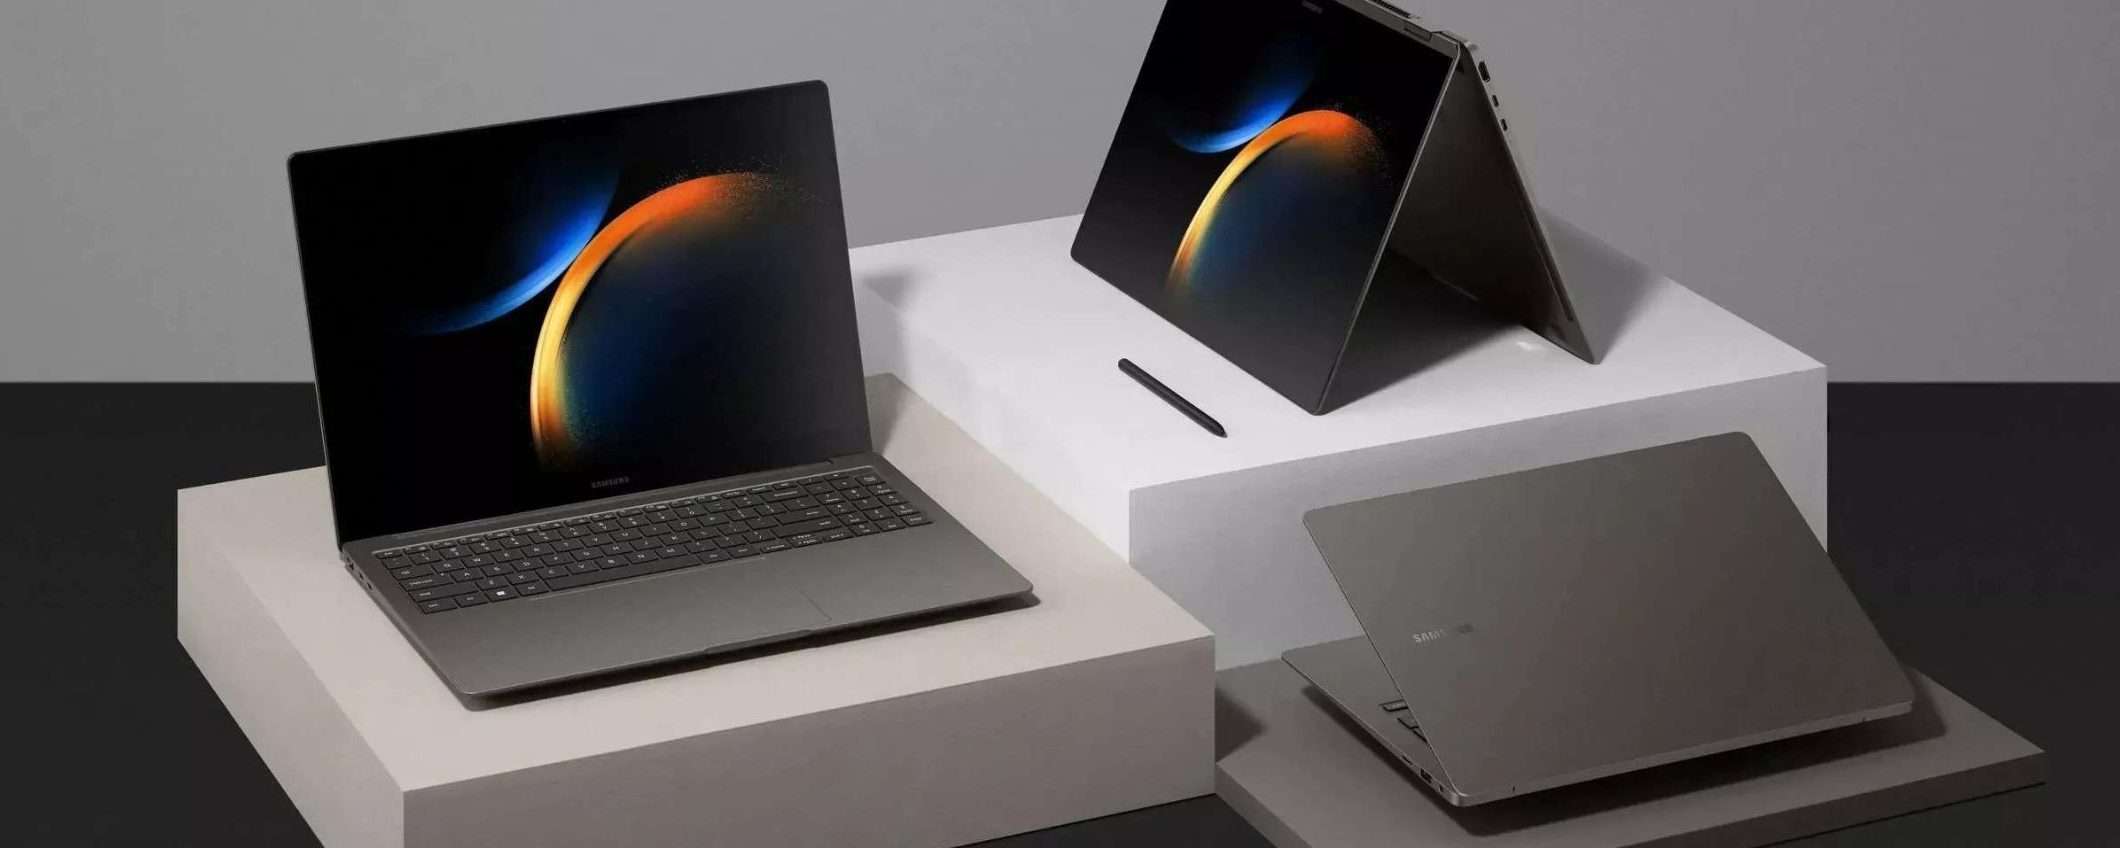 Samsung Galaxy Book 3 Laptop a meno di 660€ su Amazon